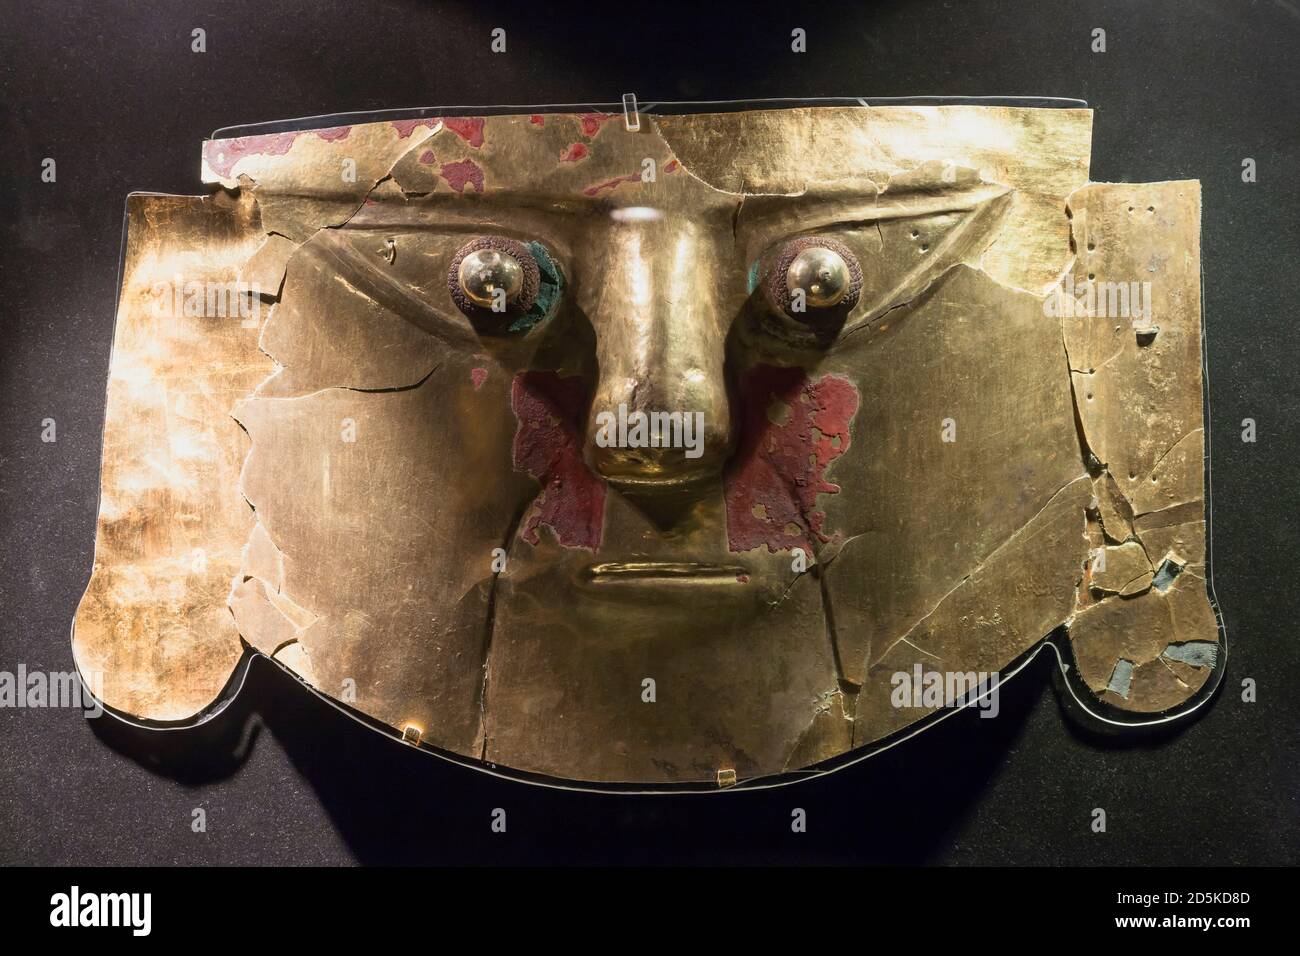 Masque d'or de la culture Sican, la galerie de métaux, 'Musée national d'archéologie, d'anthropologie et d'histoire du Pérou', Lima, Pérou, Amérique du Sud Banque D'Images